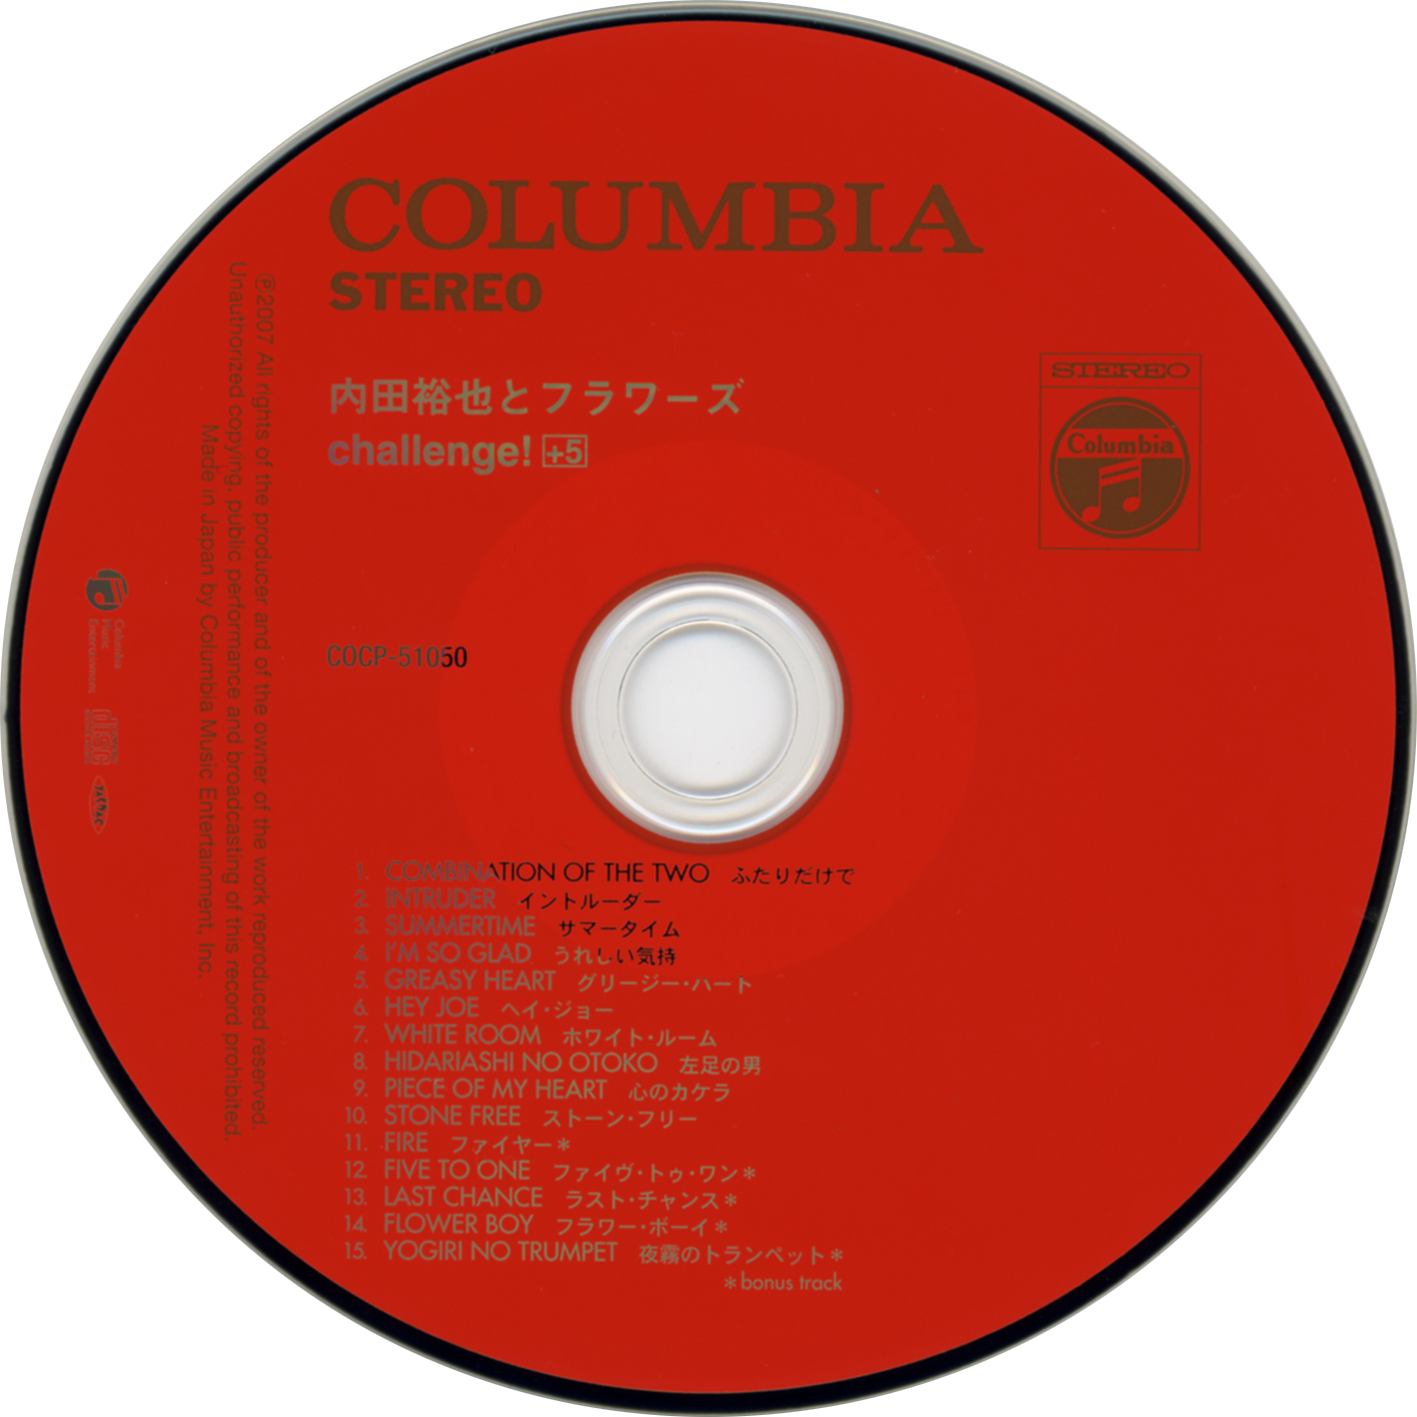 yuya uchida cd challenge columbia cocp-51050 label